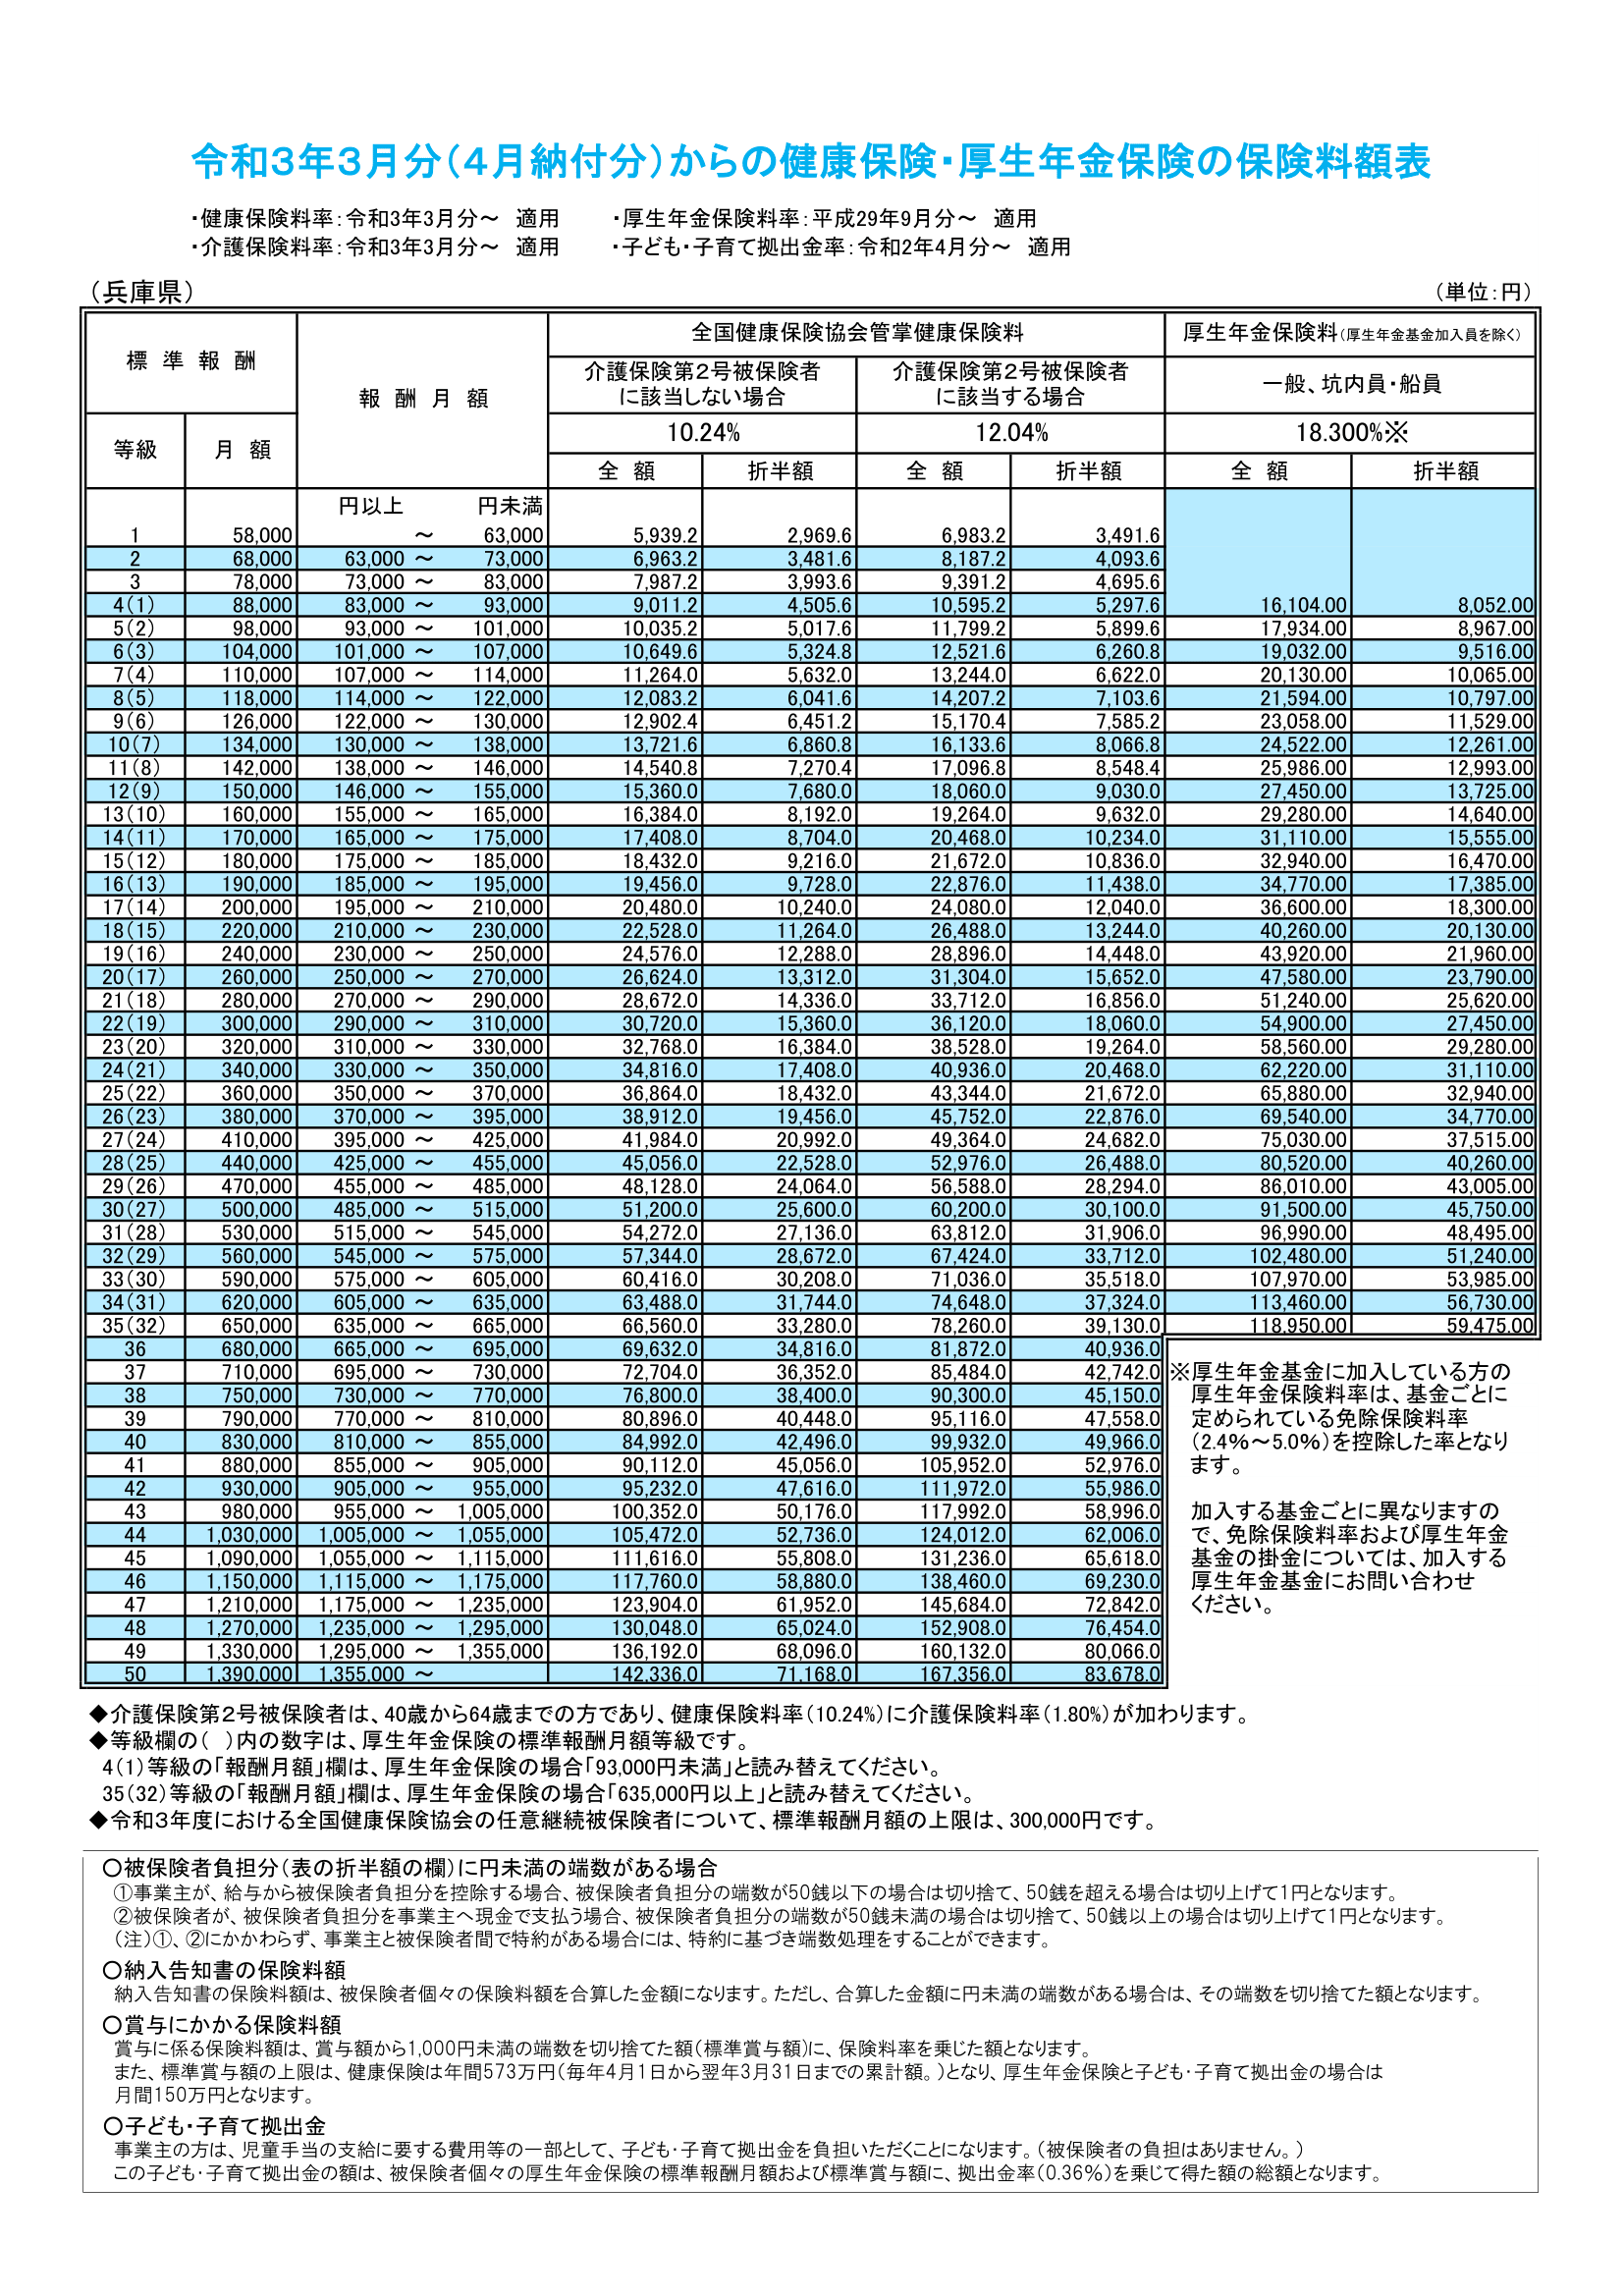 【兵庫県】健保厚年保険料額表_202103-1.png